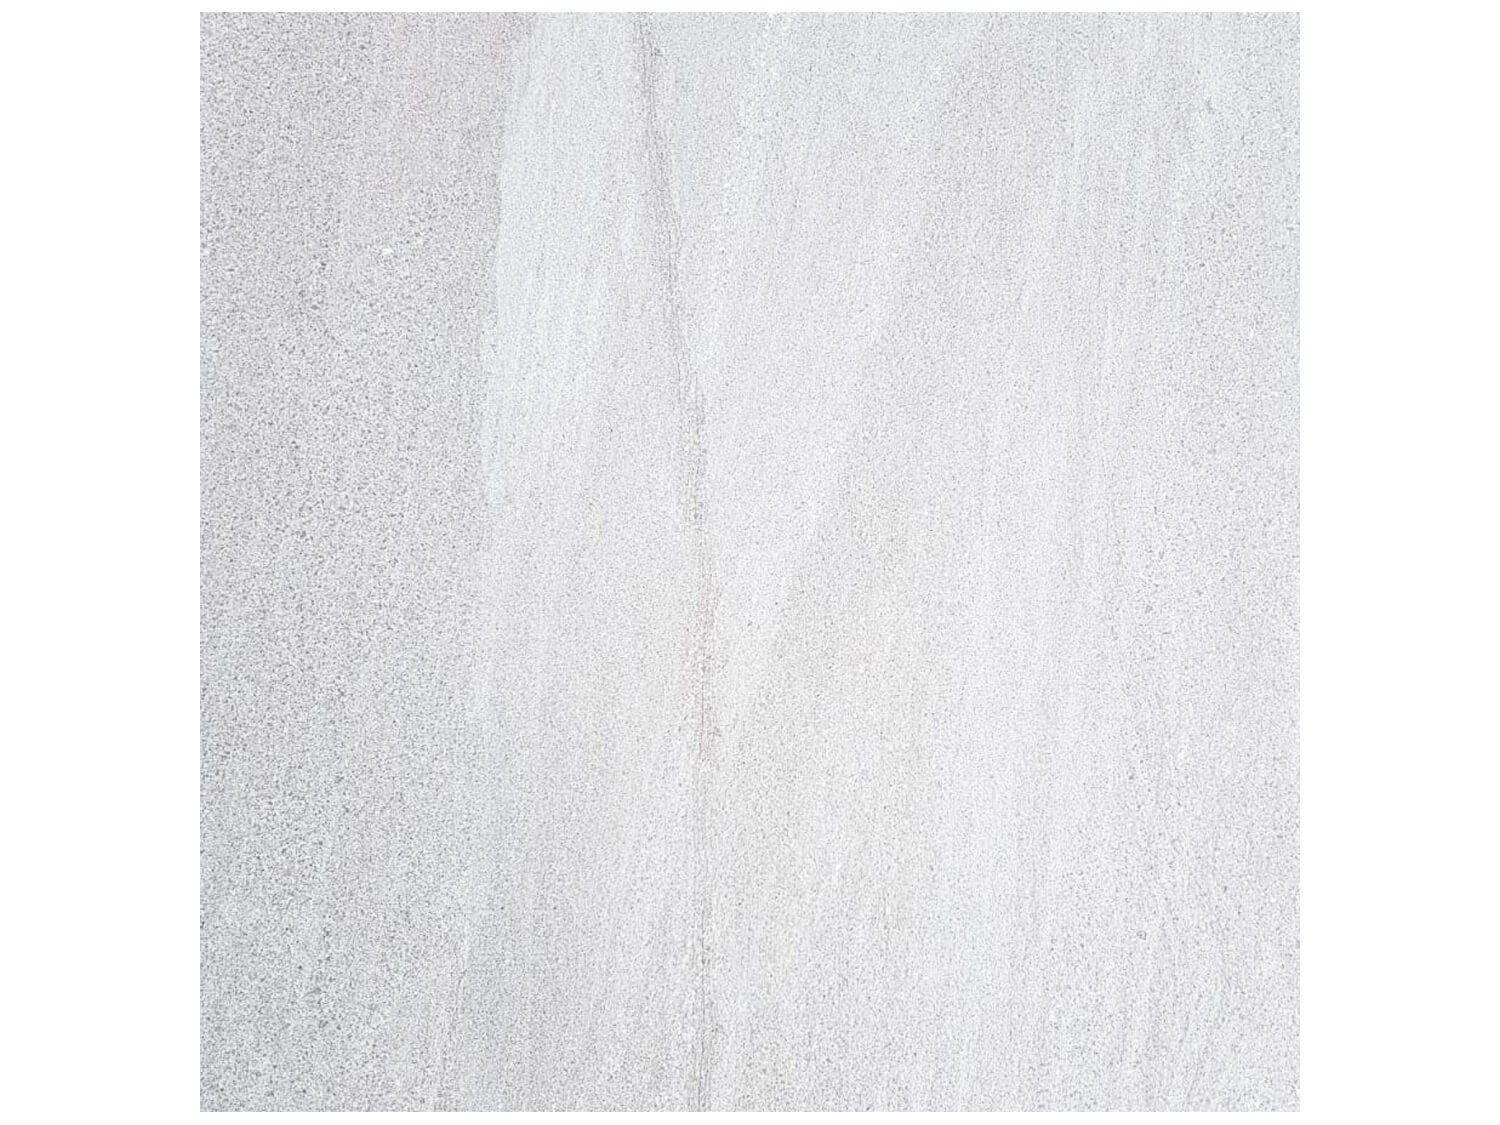 Sand Stone Light Grey Ceramic Floor Tile - 600 x 600mm